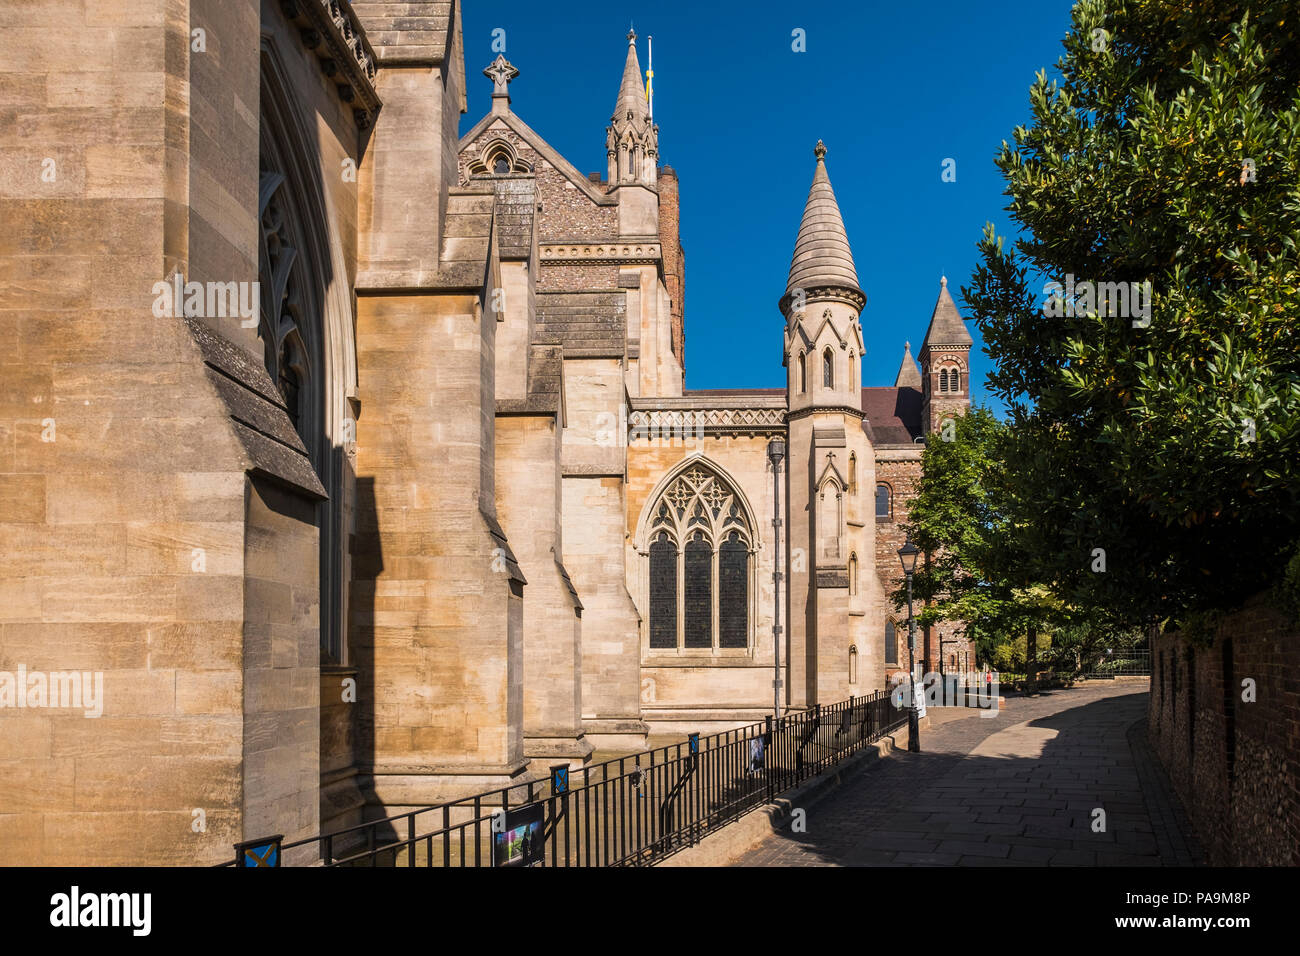 La cathédrale et église abbatiale de Saint Alban, St Albans, Hertfordshire, Angleterre, Royaume-Uni Banque D'Images